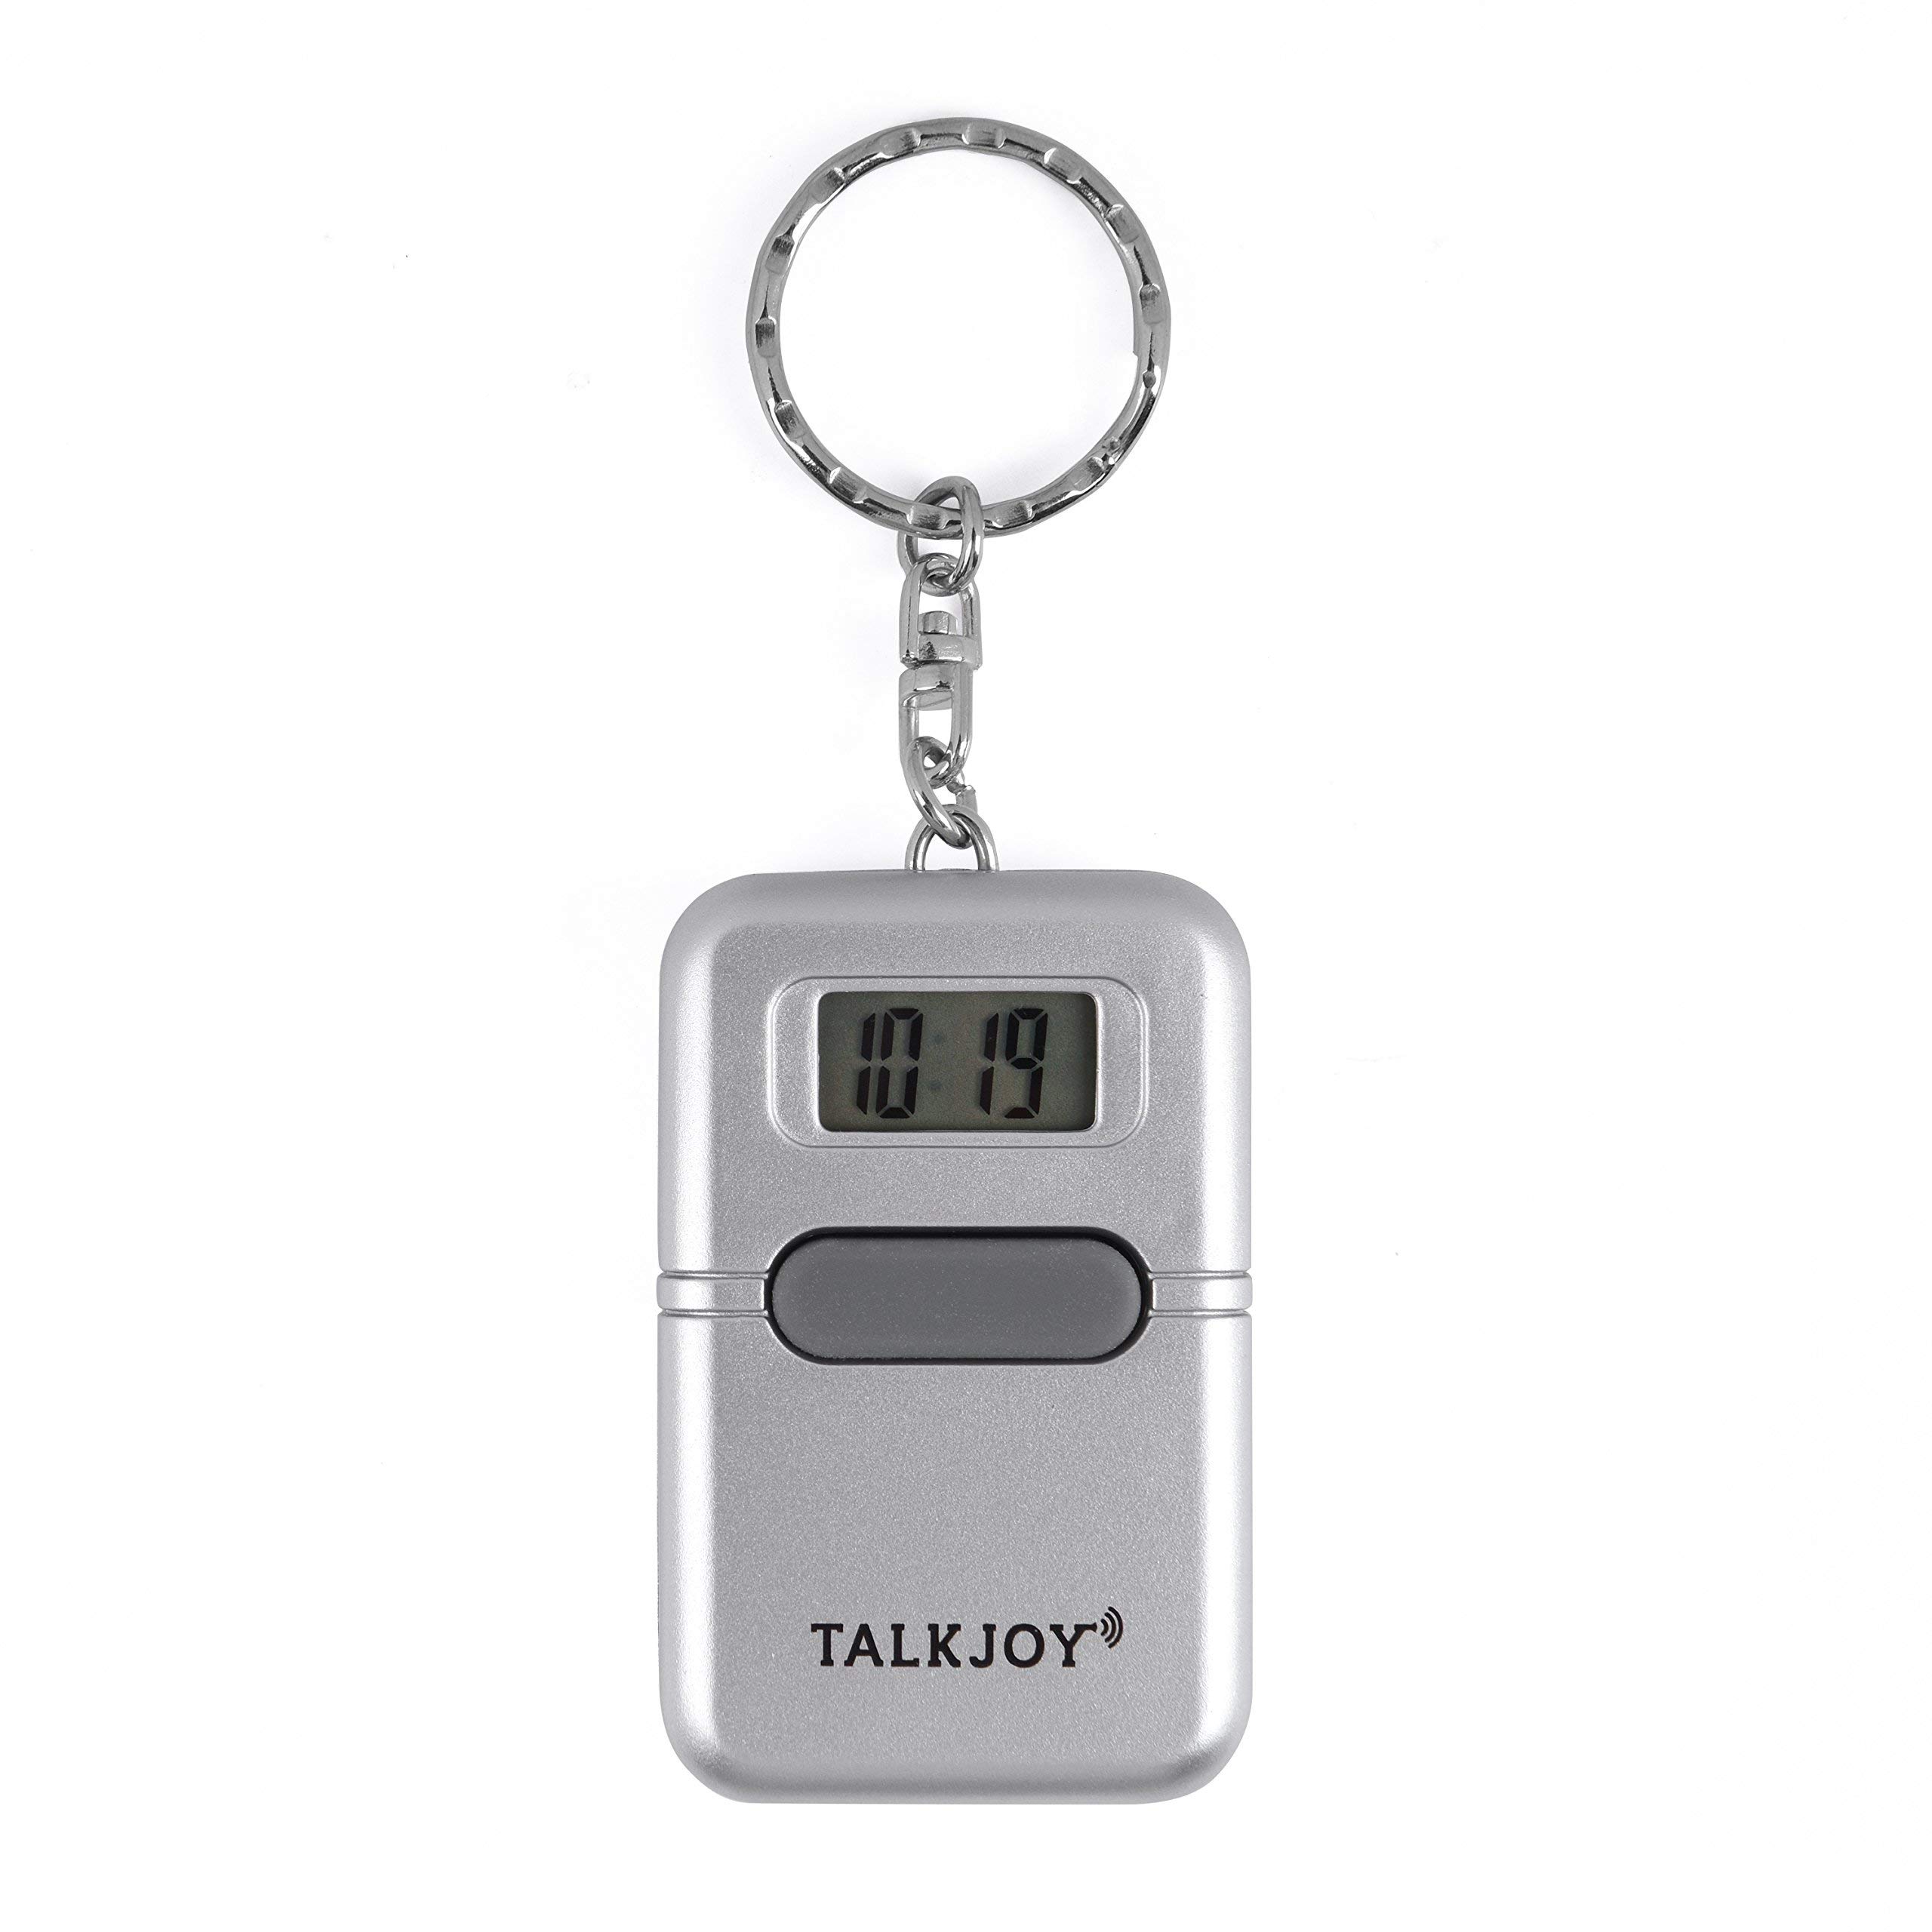 TalkJoy Sprechende Uhr Schlüsselanhänger Uhrzeit Wecker Sprachausgabe Blindenuhr Taschenuhr Digitale Seniorenuhr LCD Sehbehinderte